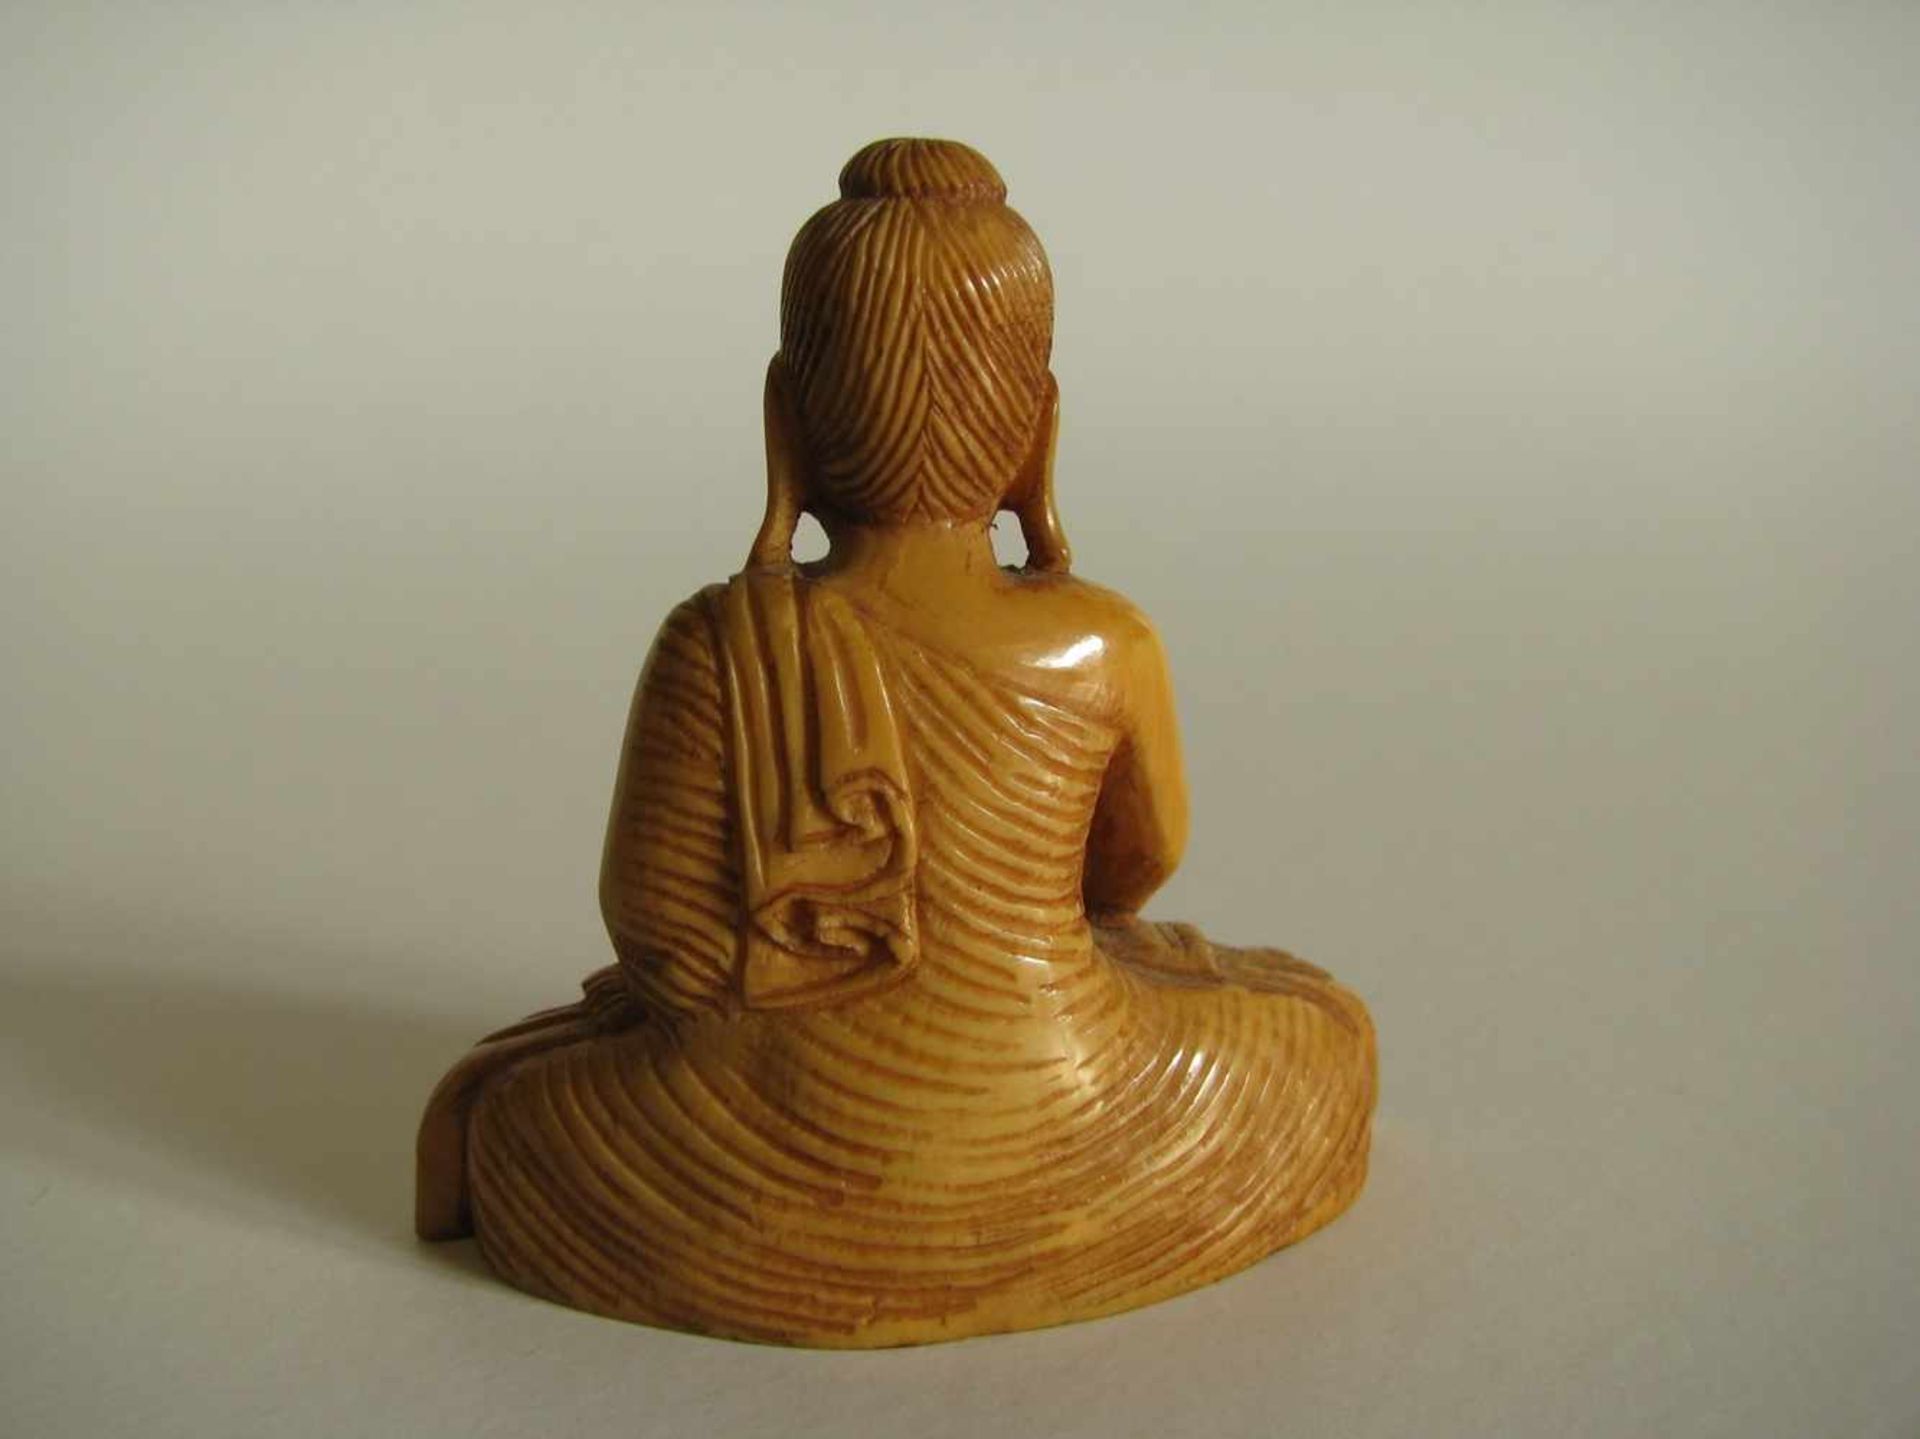 Sitzender Buddha, wohl Ceylon, 19. Jahrhundert, Elfenbein beschnitzt, 5,5 x 5,5 x 2,4 cm. - Bild 2 aus 2